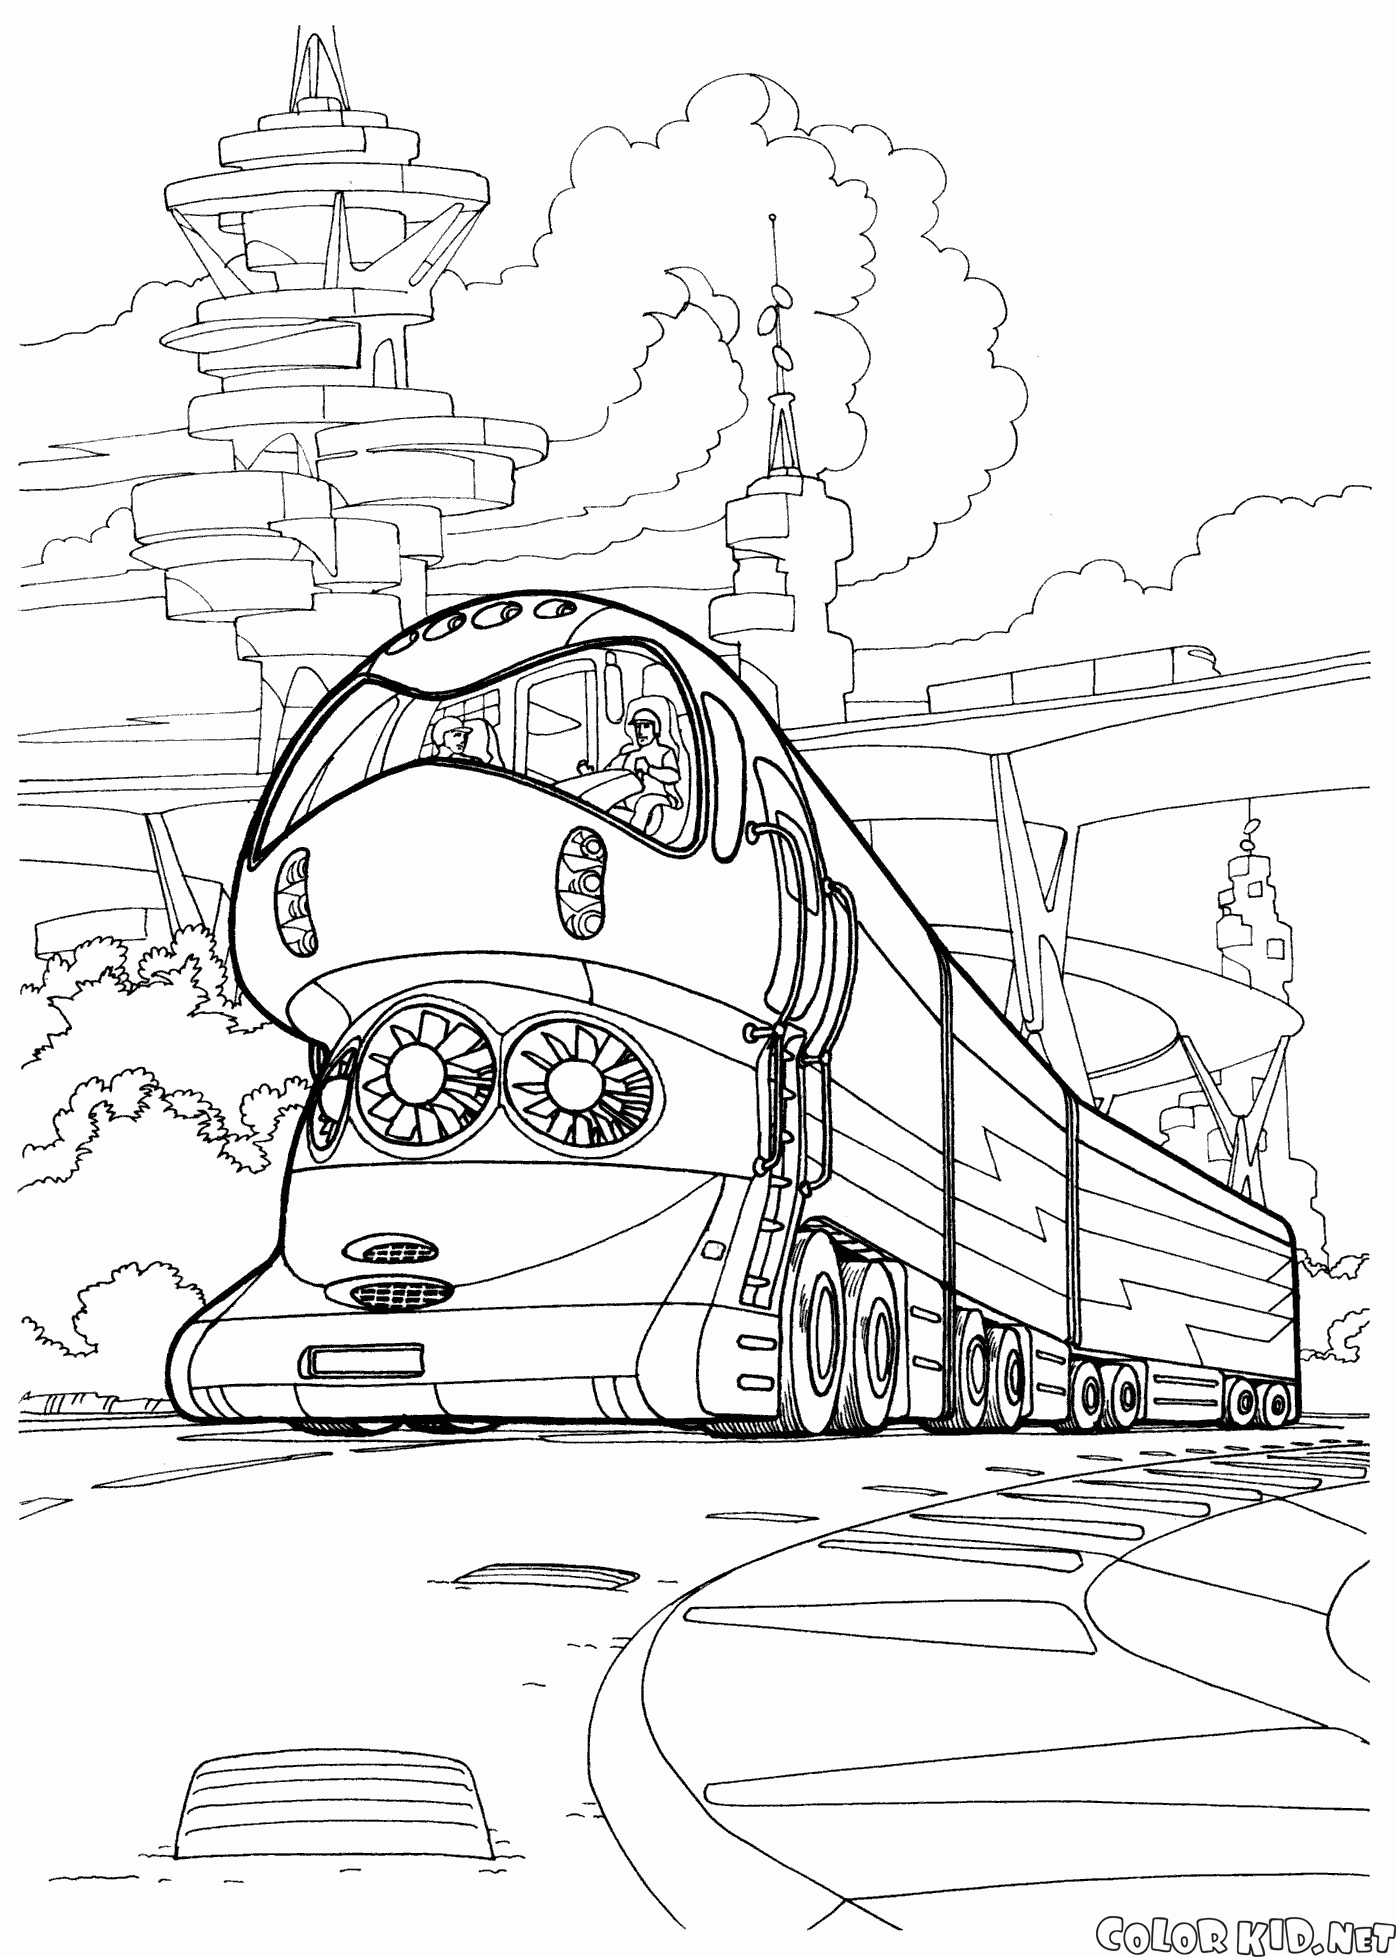 O trem de alta tecnologia